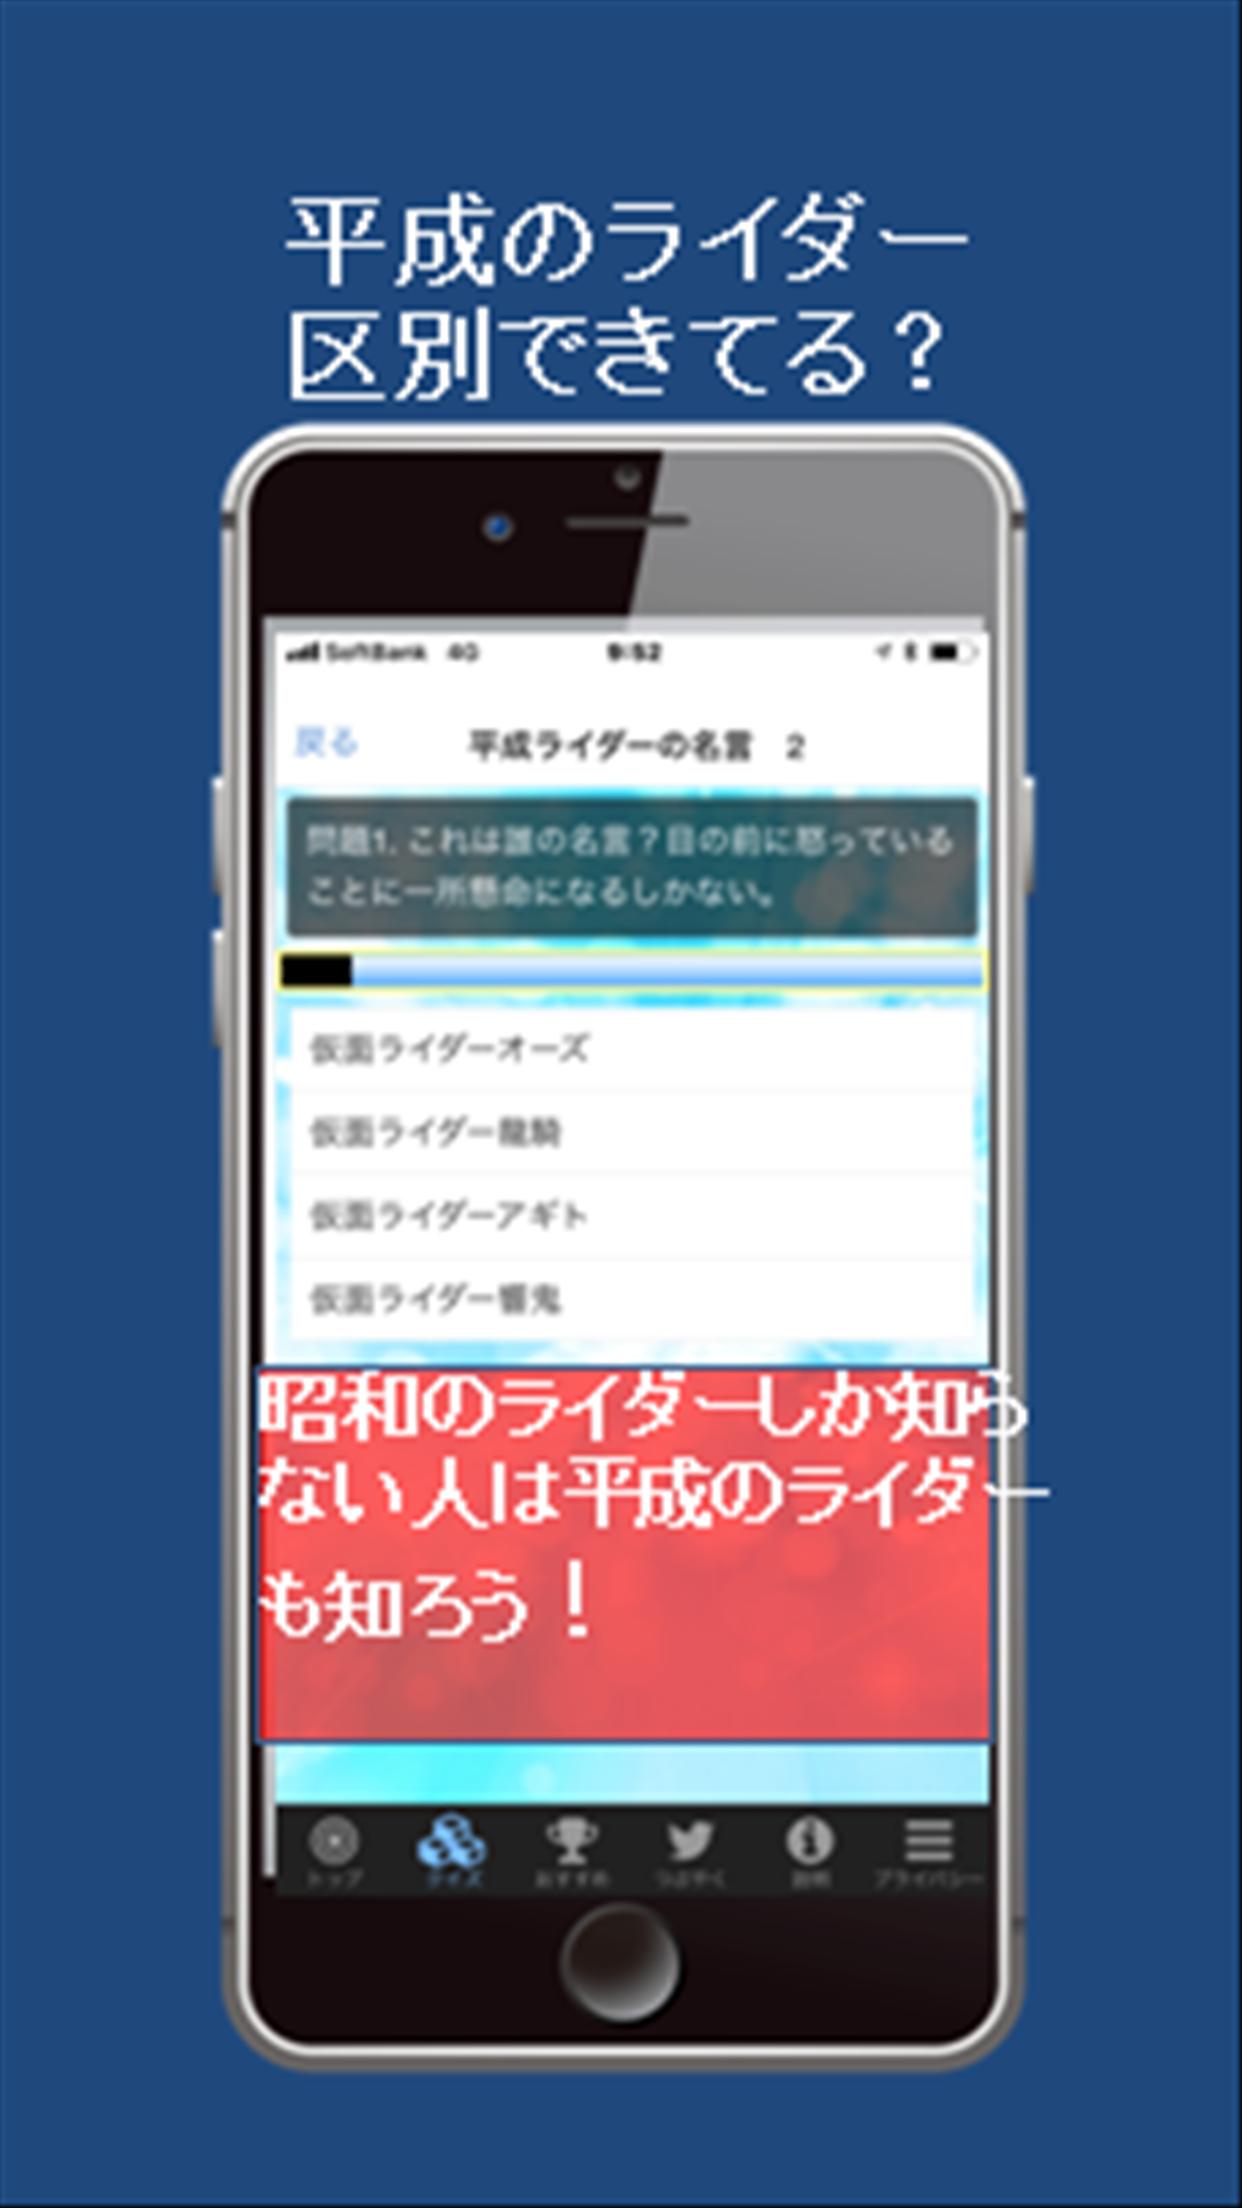 戦隊for仮面ライダー名言 イケメン俳優 ライダーディケイドの雑学のクイズ For Android Apk Download